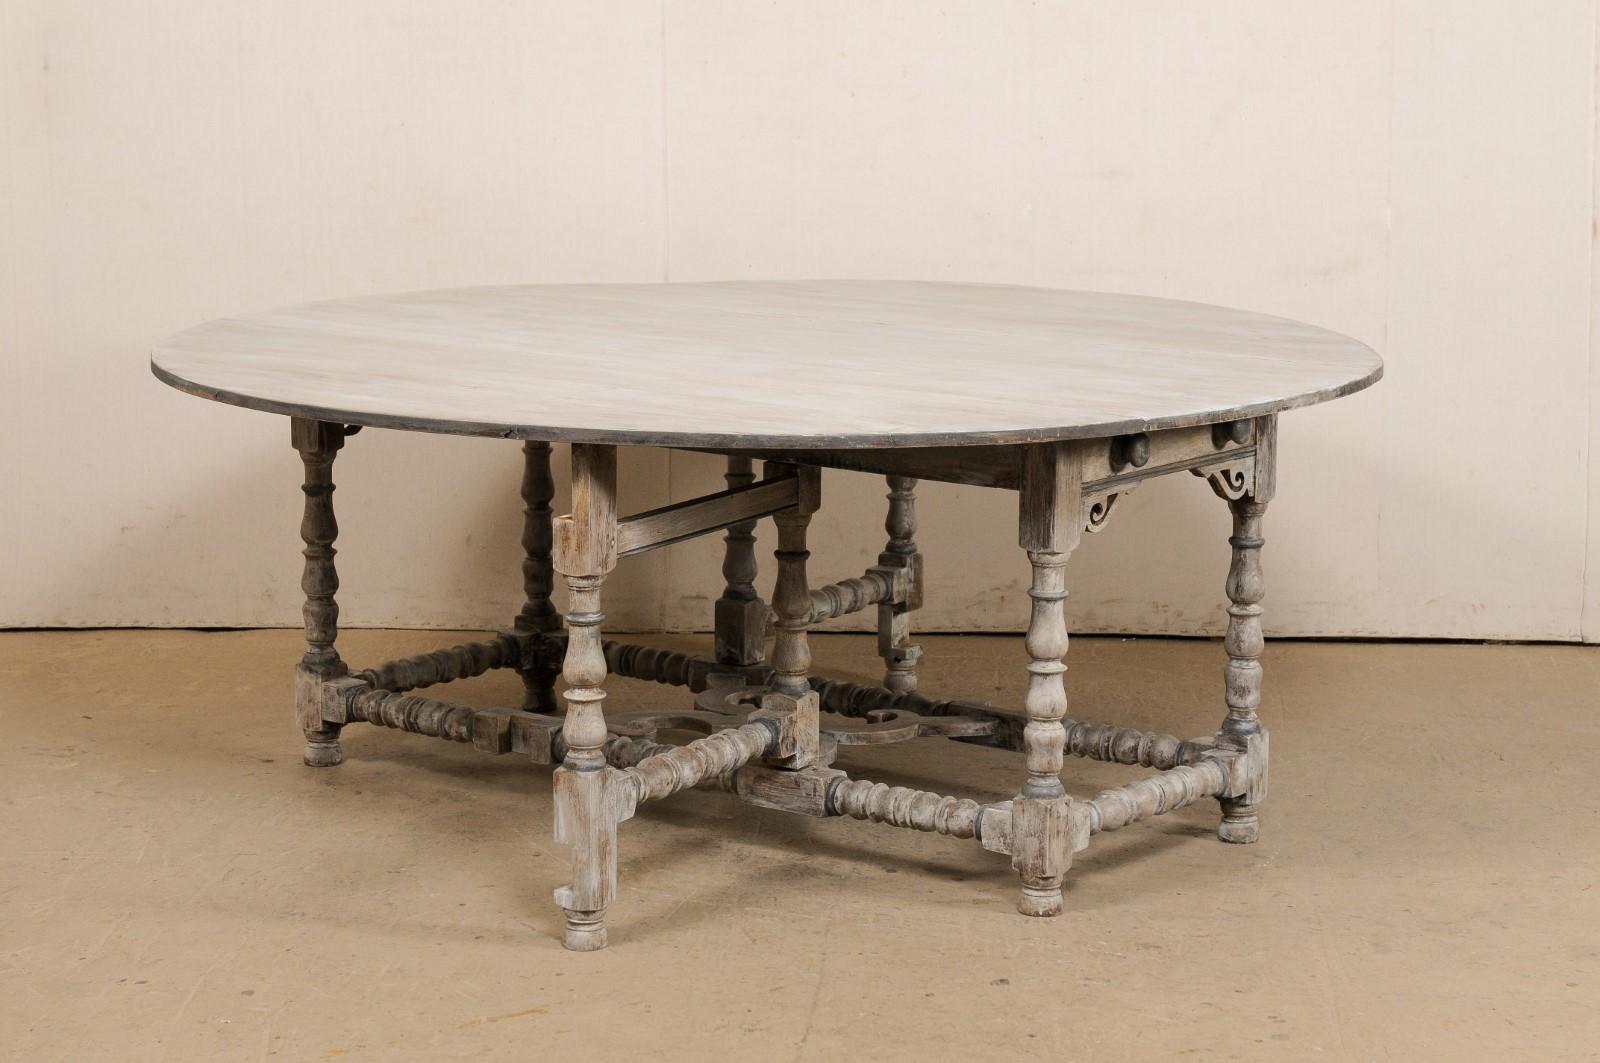 Une table anglaise de forme ronde à double pied de porte, avec tiroir, du début du XXe siècle. Cette table ancienne d'Angleterre présente un grand plateau de forme ronde avec deux feuilles tombantes de chaque côté, qui, une fois descendues, donnent